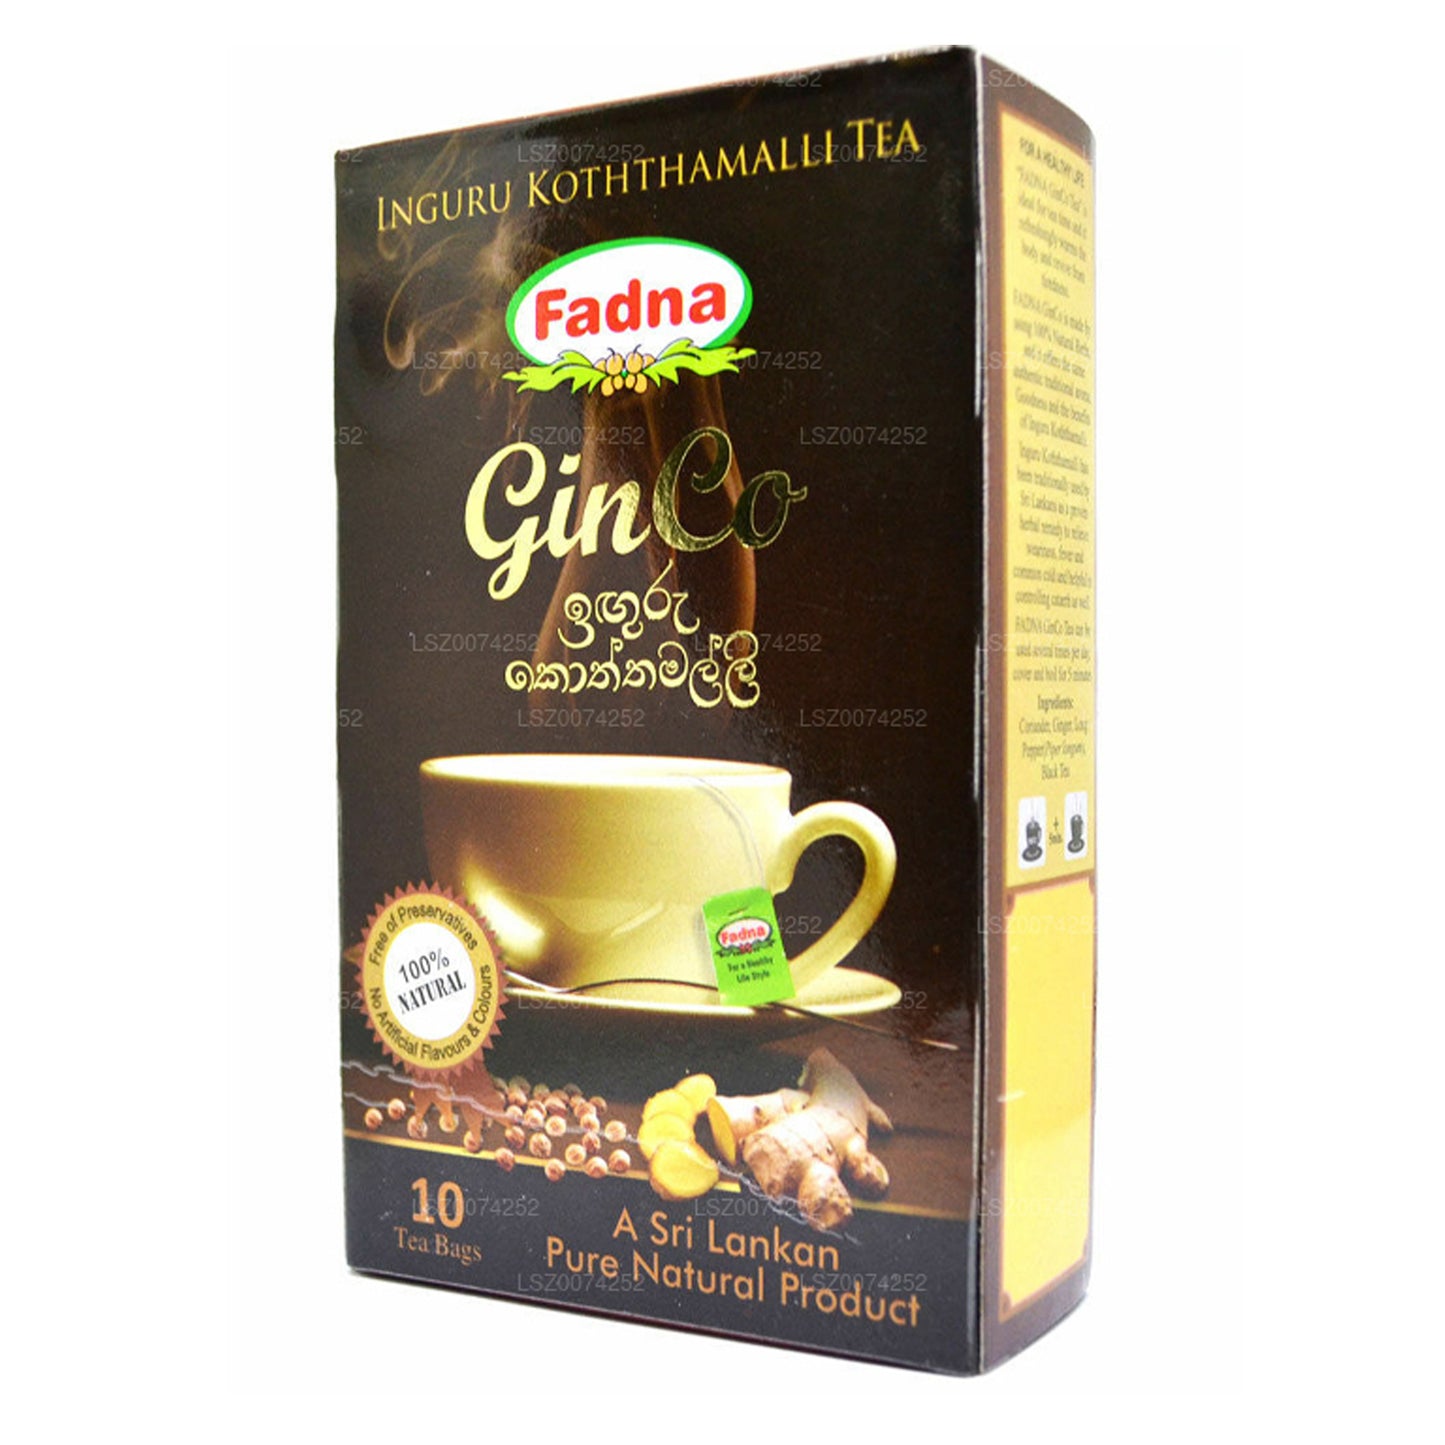 Thé aromatisé au gingembre et à la coriandre Fadna (20 g) 10 sachets de thé